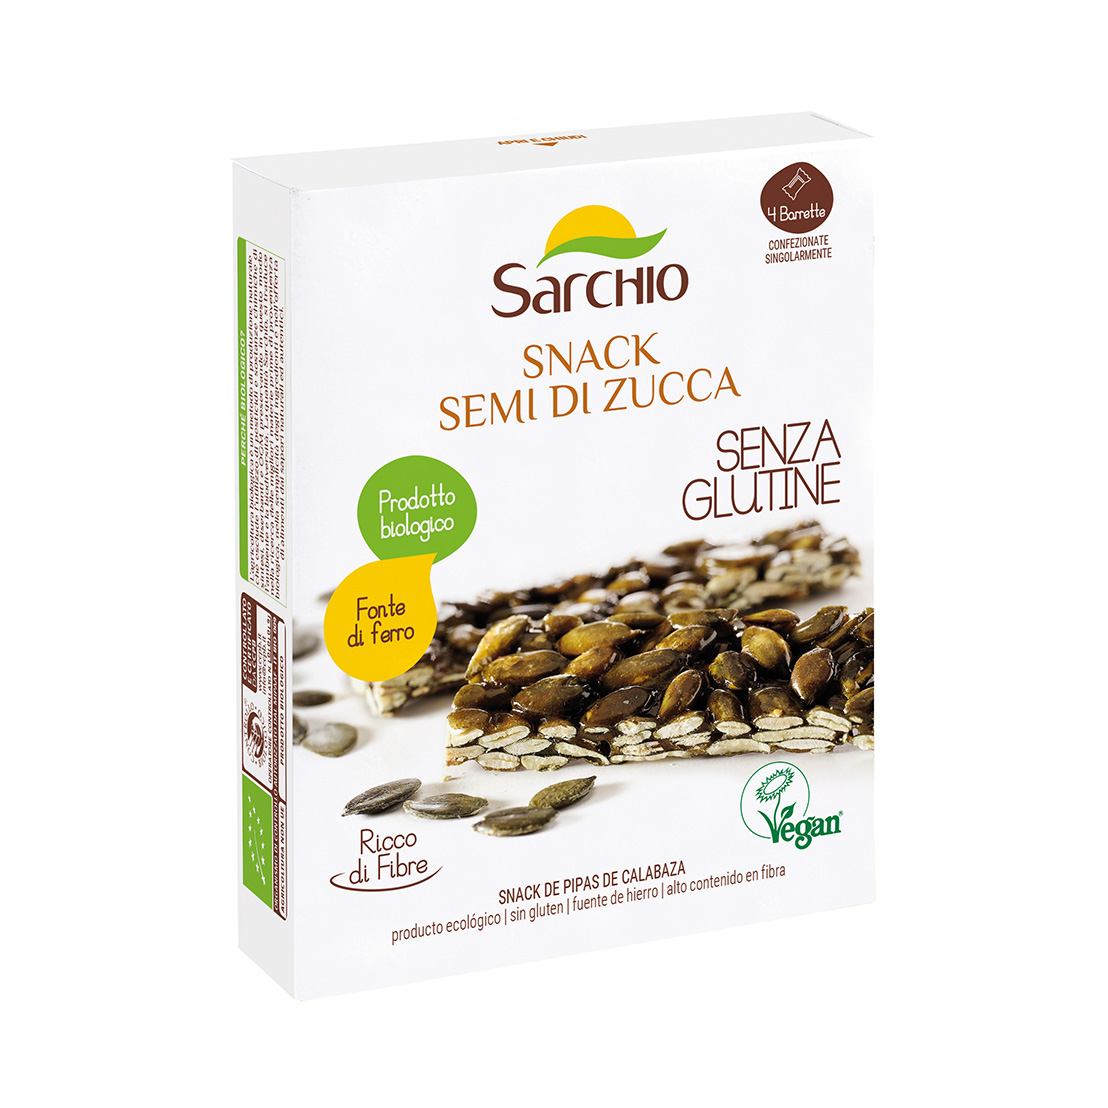 Image of Sarchio Semi Di Zucca Monoporzione Senza Glutine 20g